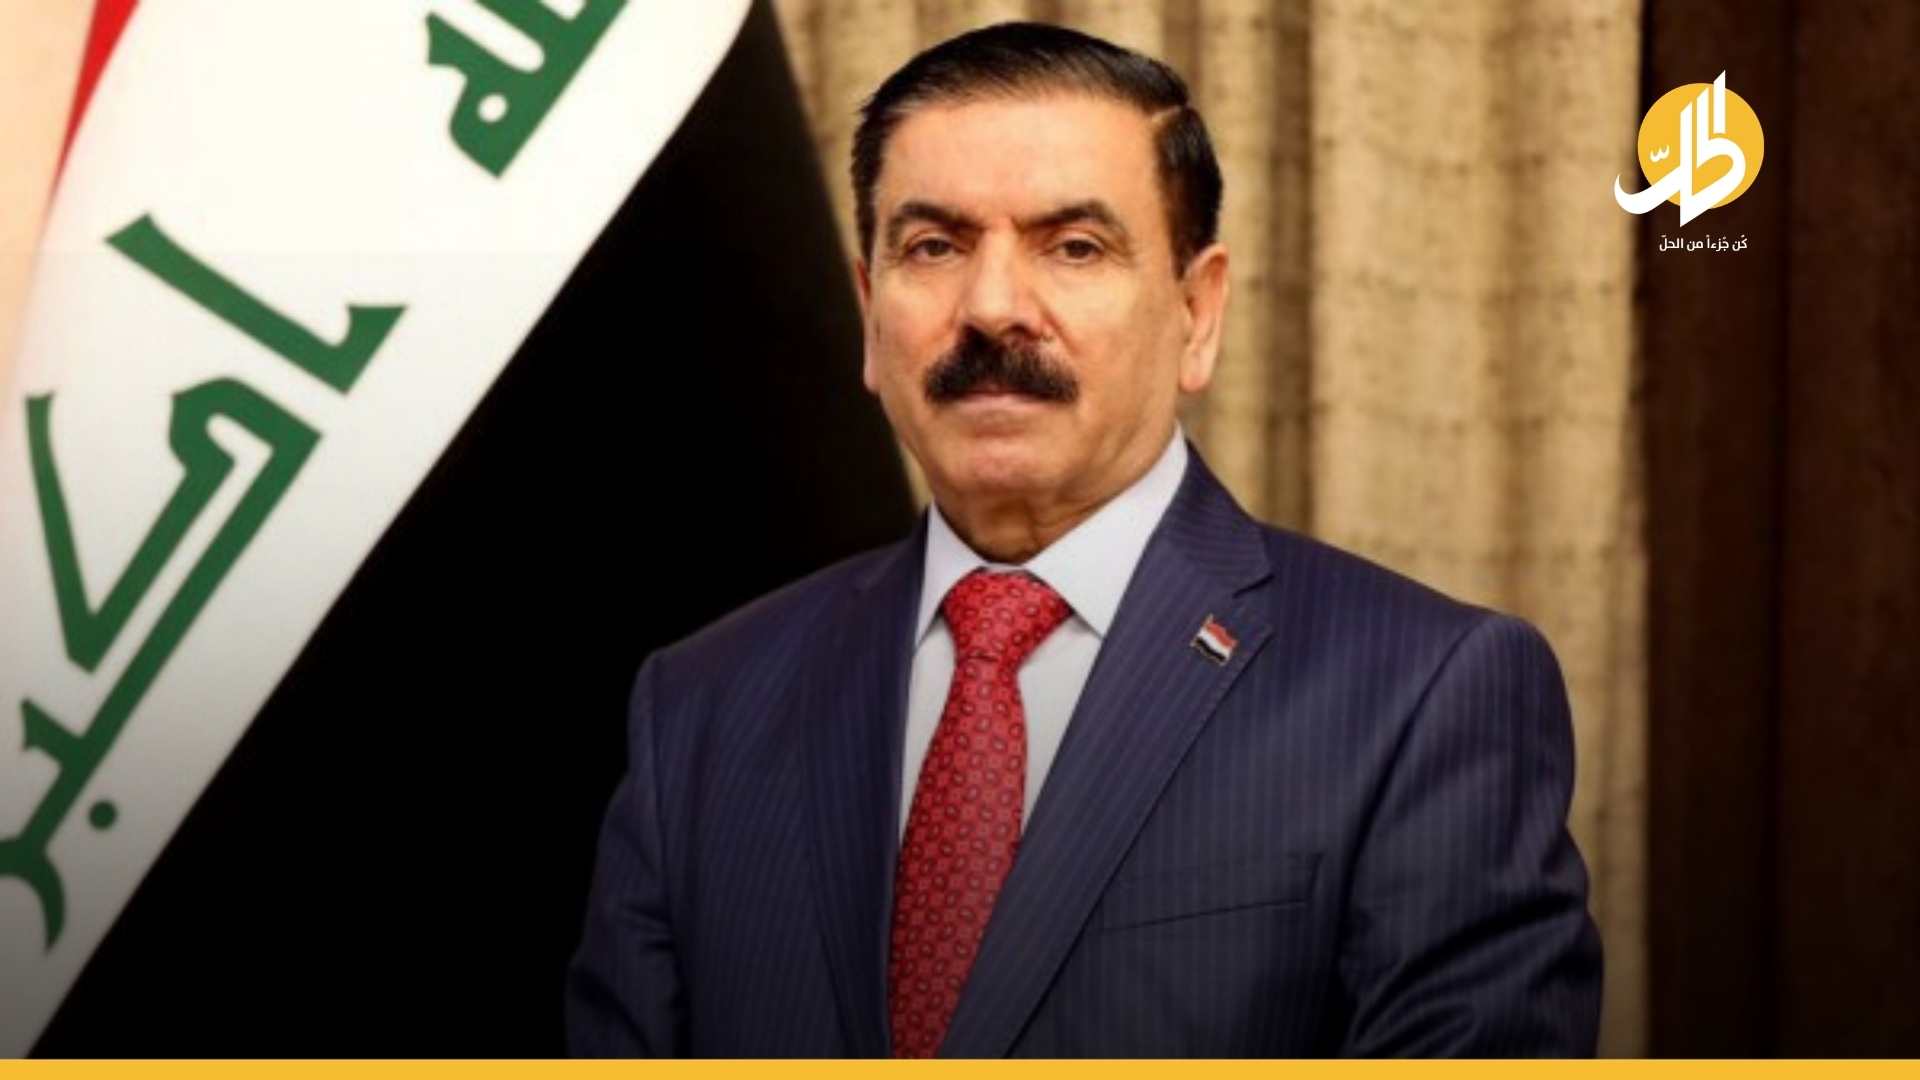 وزير الدفاع العراقي يتوعّد الميليشيات ويحذّرها من تكرار الانتشار المسلّح: أُحادياتكُم لا تُخيفنا!